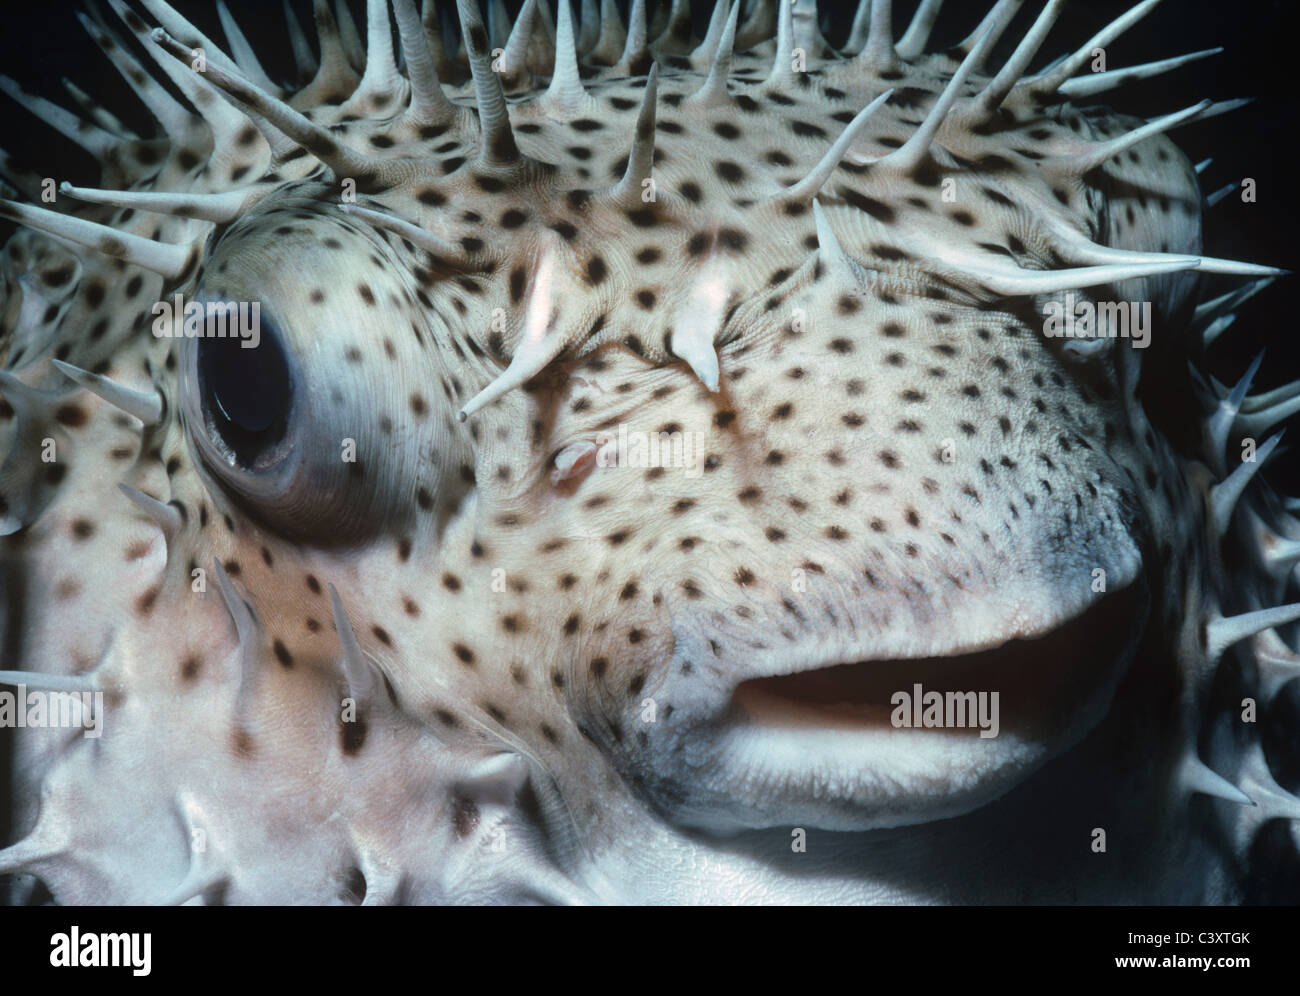 Aufgeblasenen Kugelfisch gezügelt (Chilomycterus Antennatus), Bahamas - Karibik. Stockfoto